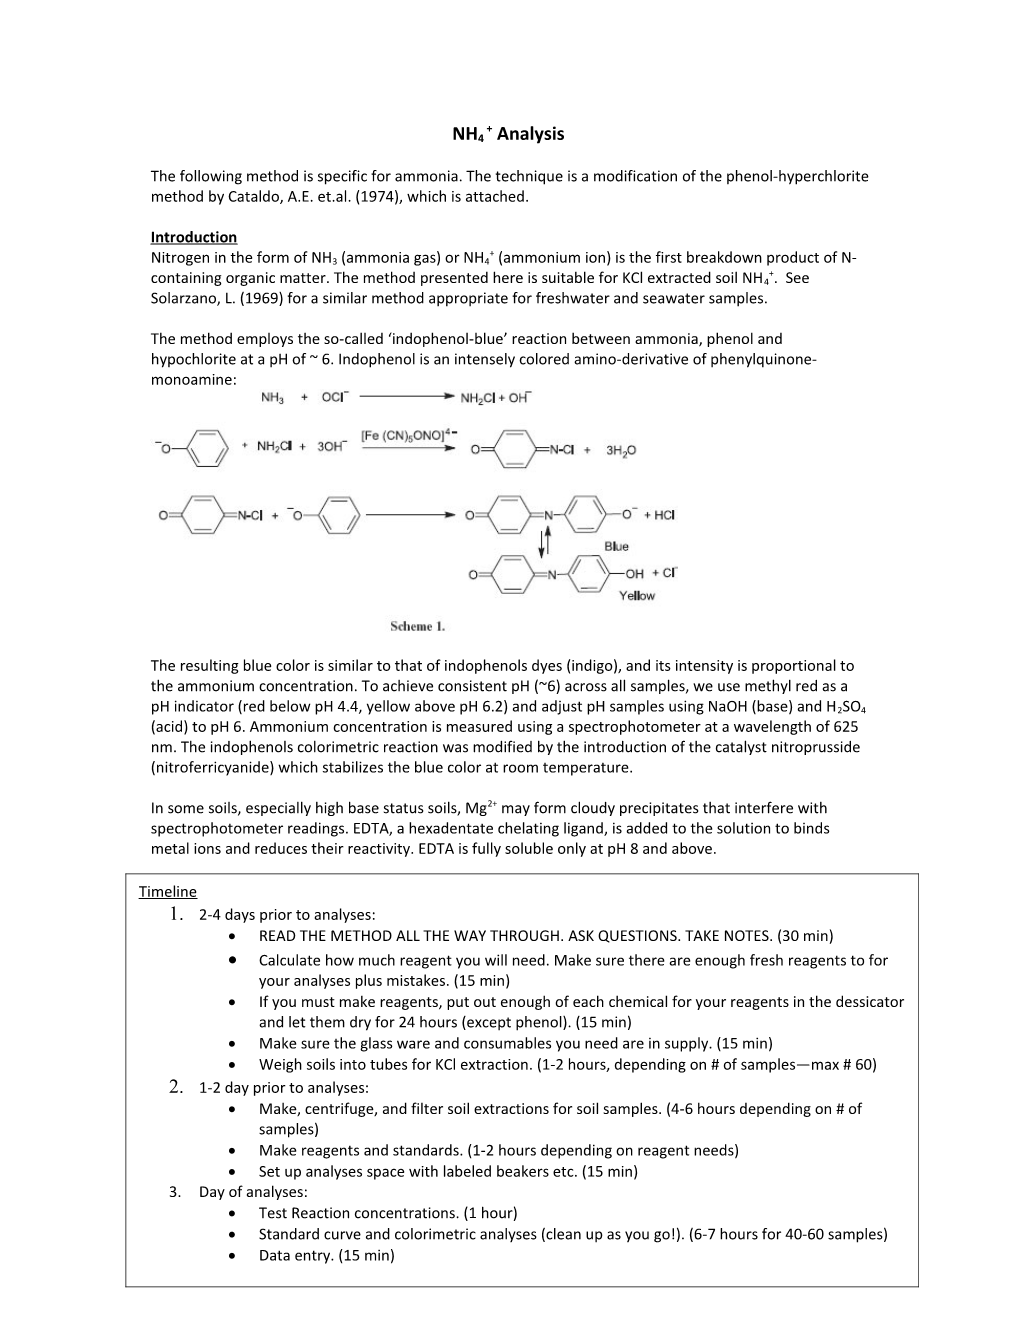 Na Hypochlorite NH4 + Analysis